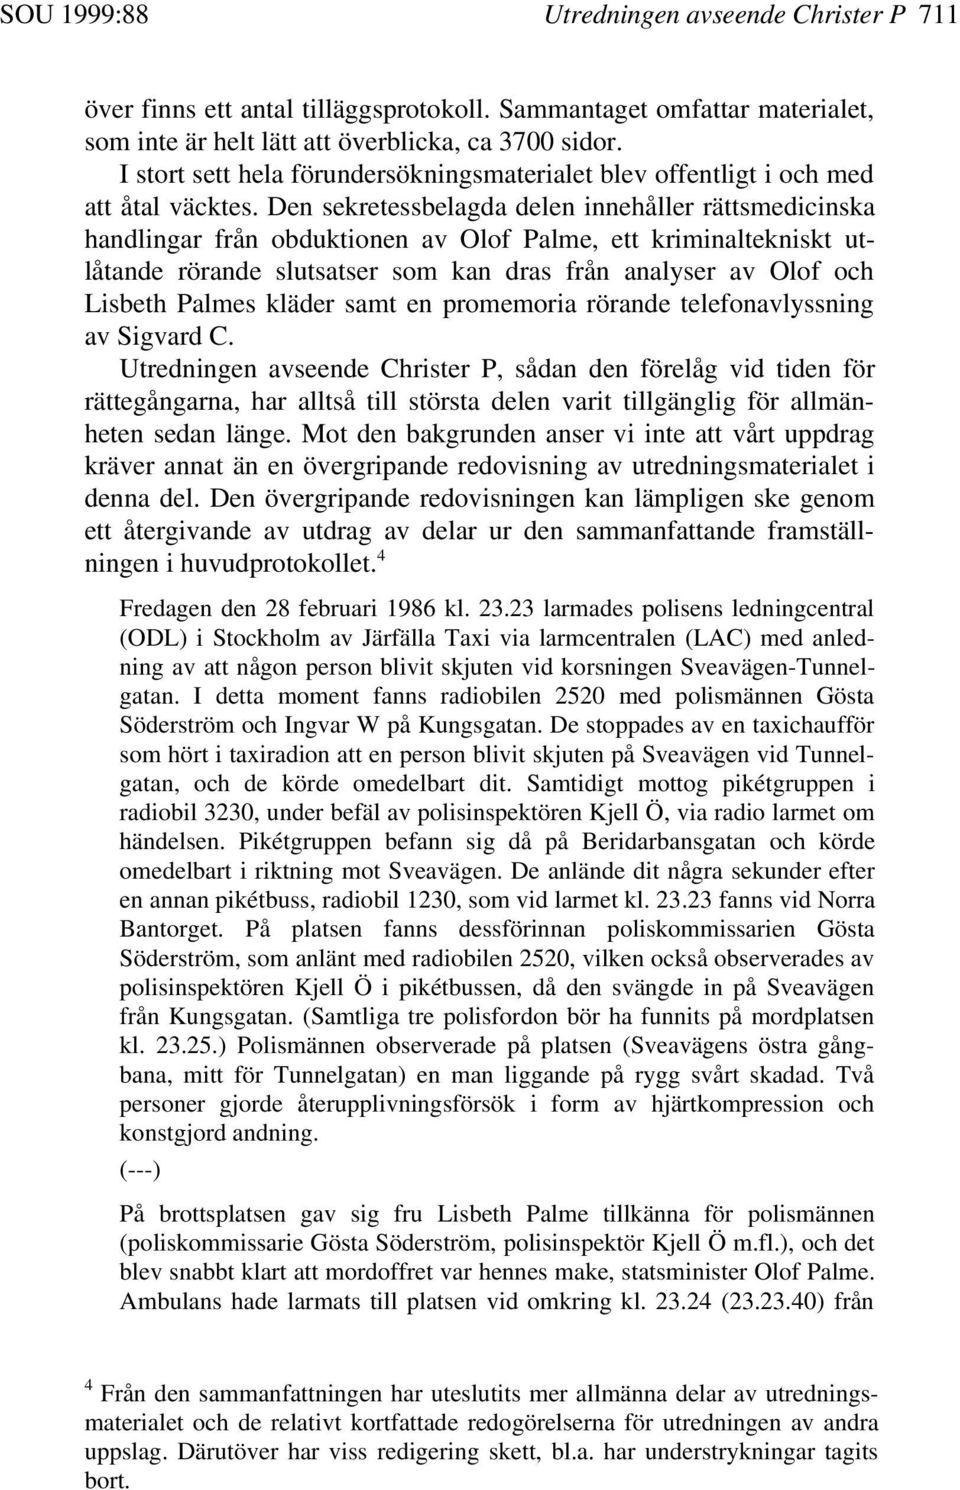 Den sekretessbelagda delen innehåller rättsmedicinska handlingar från obduktionen av Olof Palme, ett kriminaltekniskt utlåtande rörande slutsatser som kan dras från analyser av Olof och Lisbeth